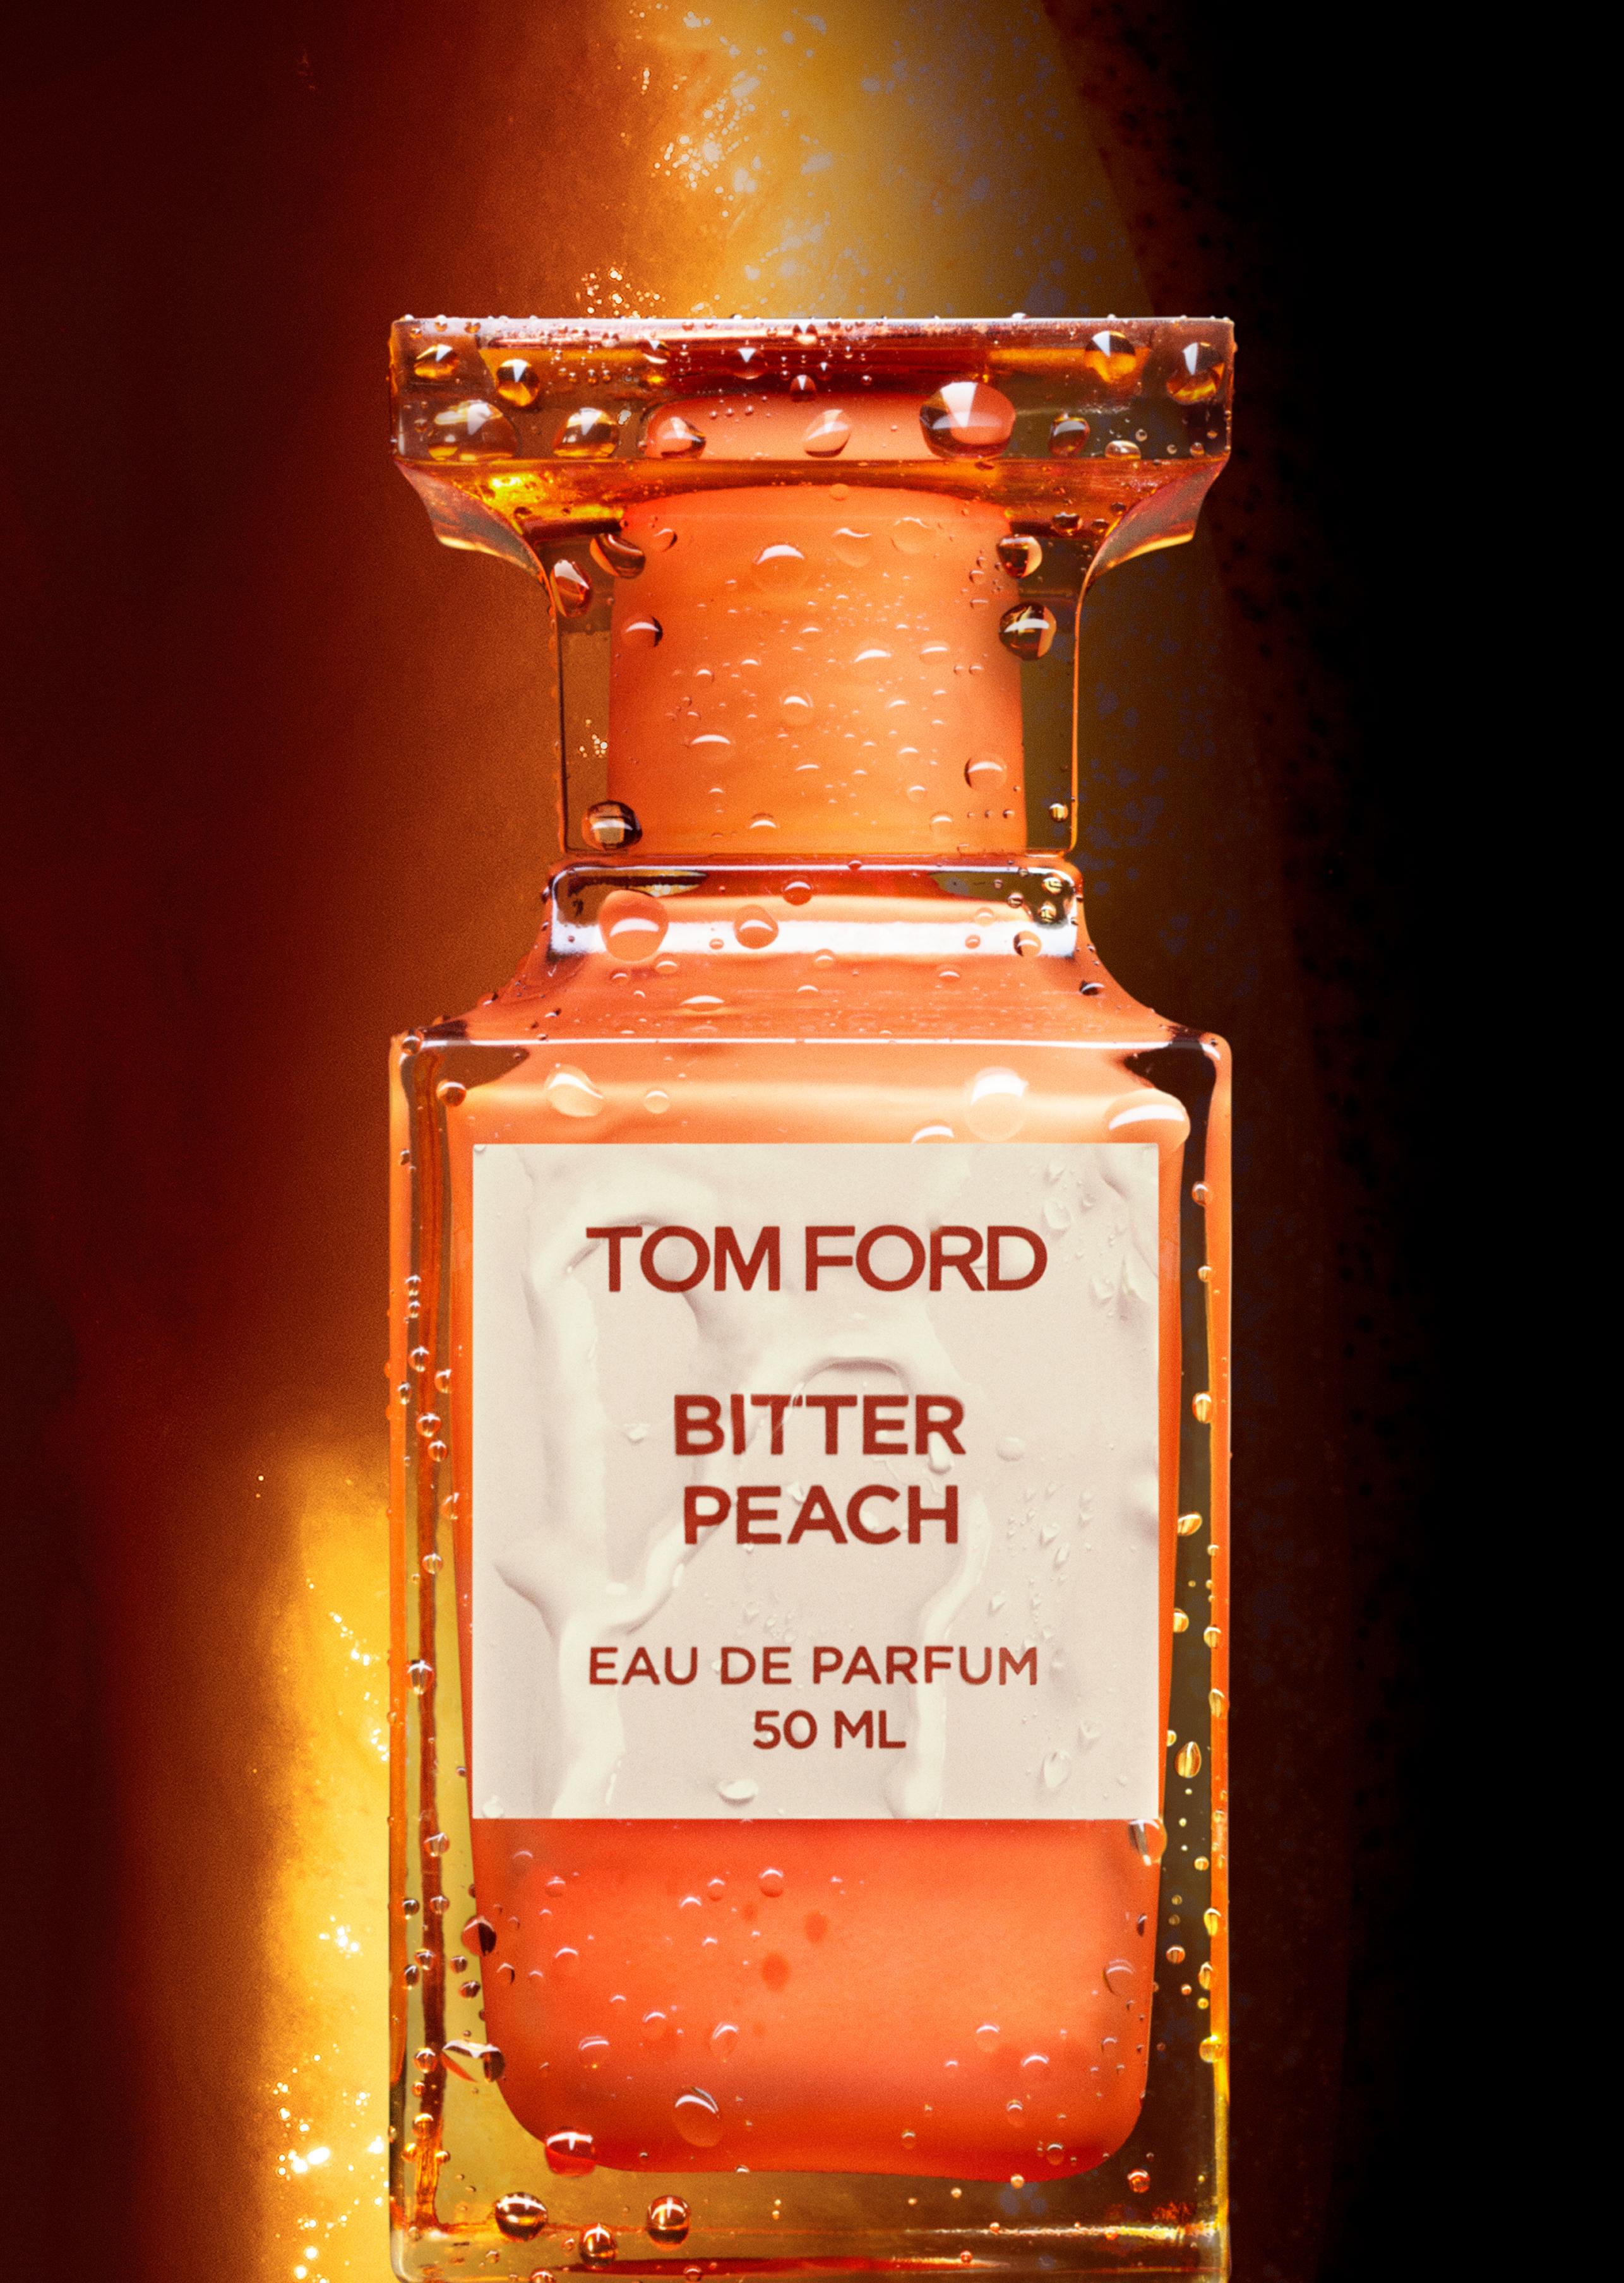 Tom Ford BITTER PEACH EAU DE PARFUM - Beauty 